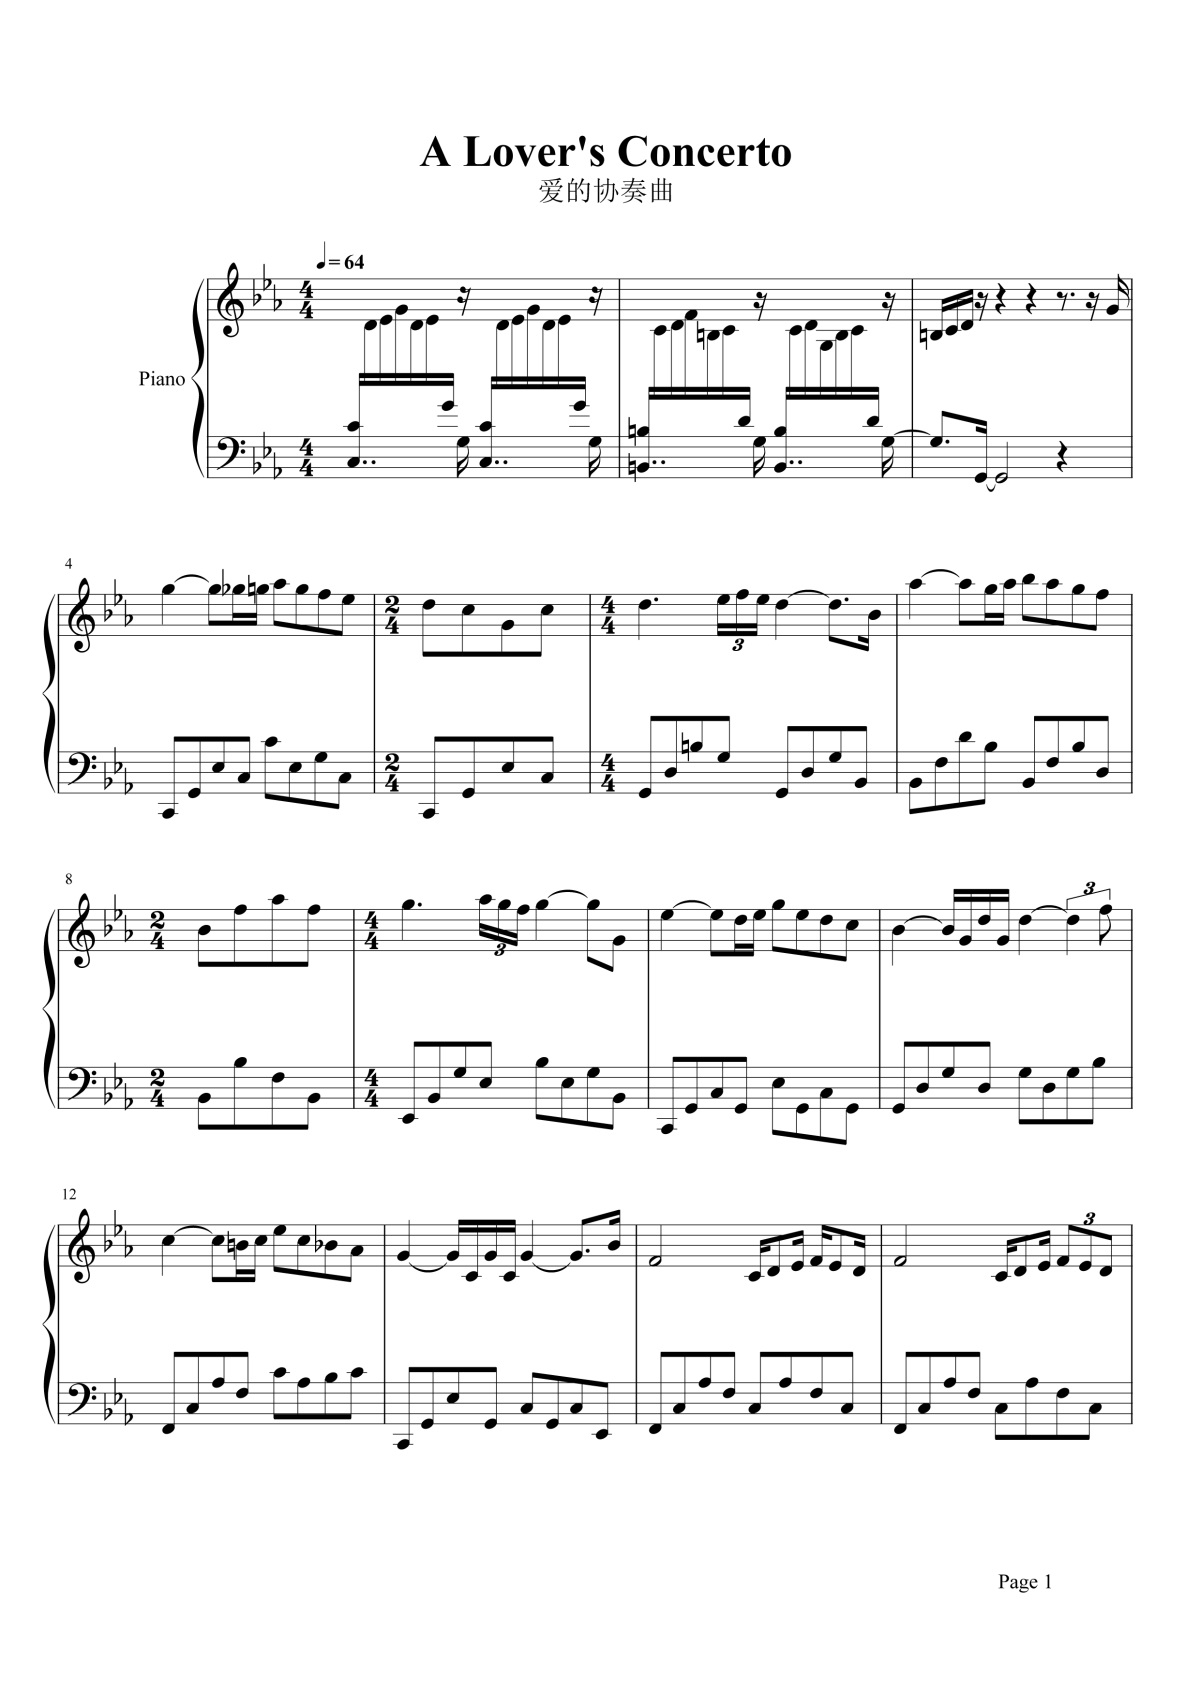 《爱的协奏曲》的钢琴谱钢琴曲谱 - Richard Clayderman